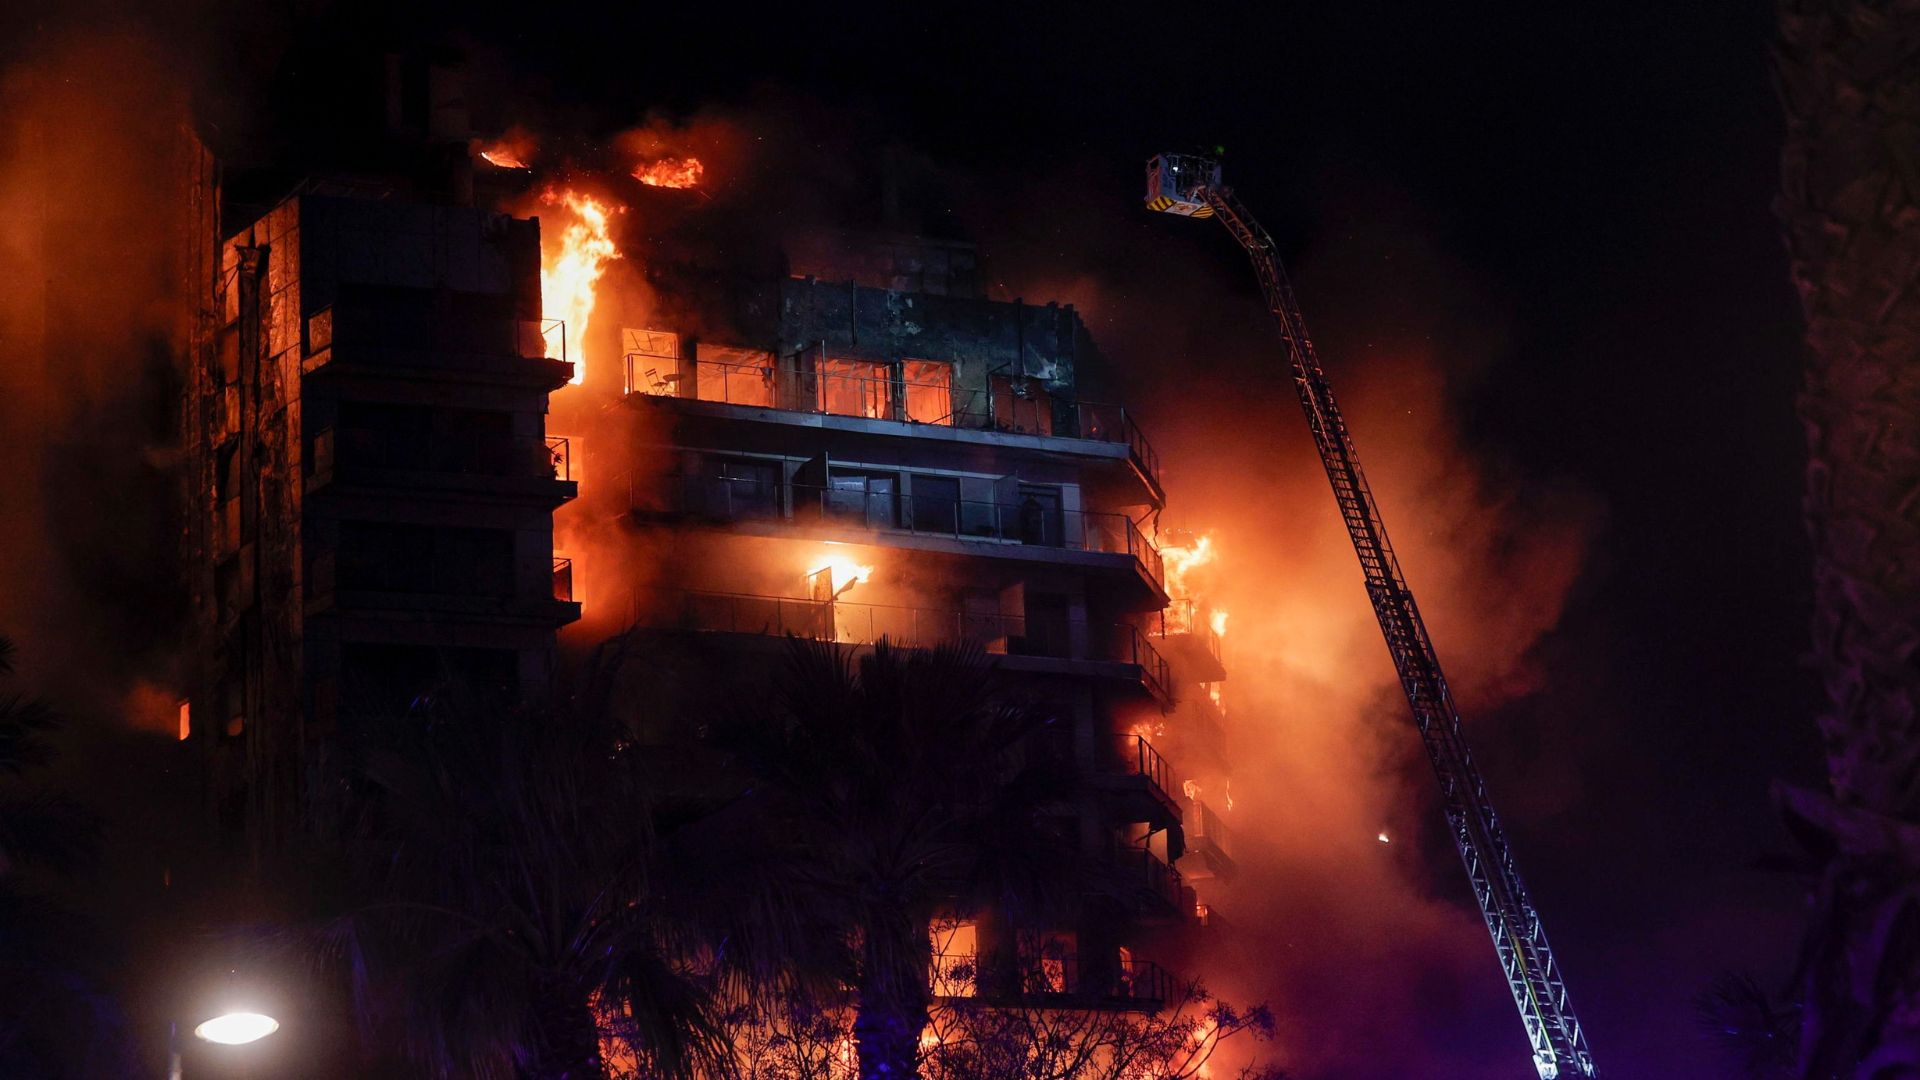 Valencia come Milano, prende fuoco il grattacielo rivestito con lo stesso materiale